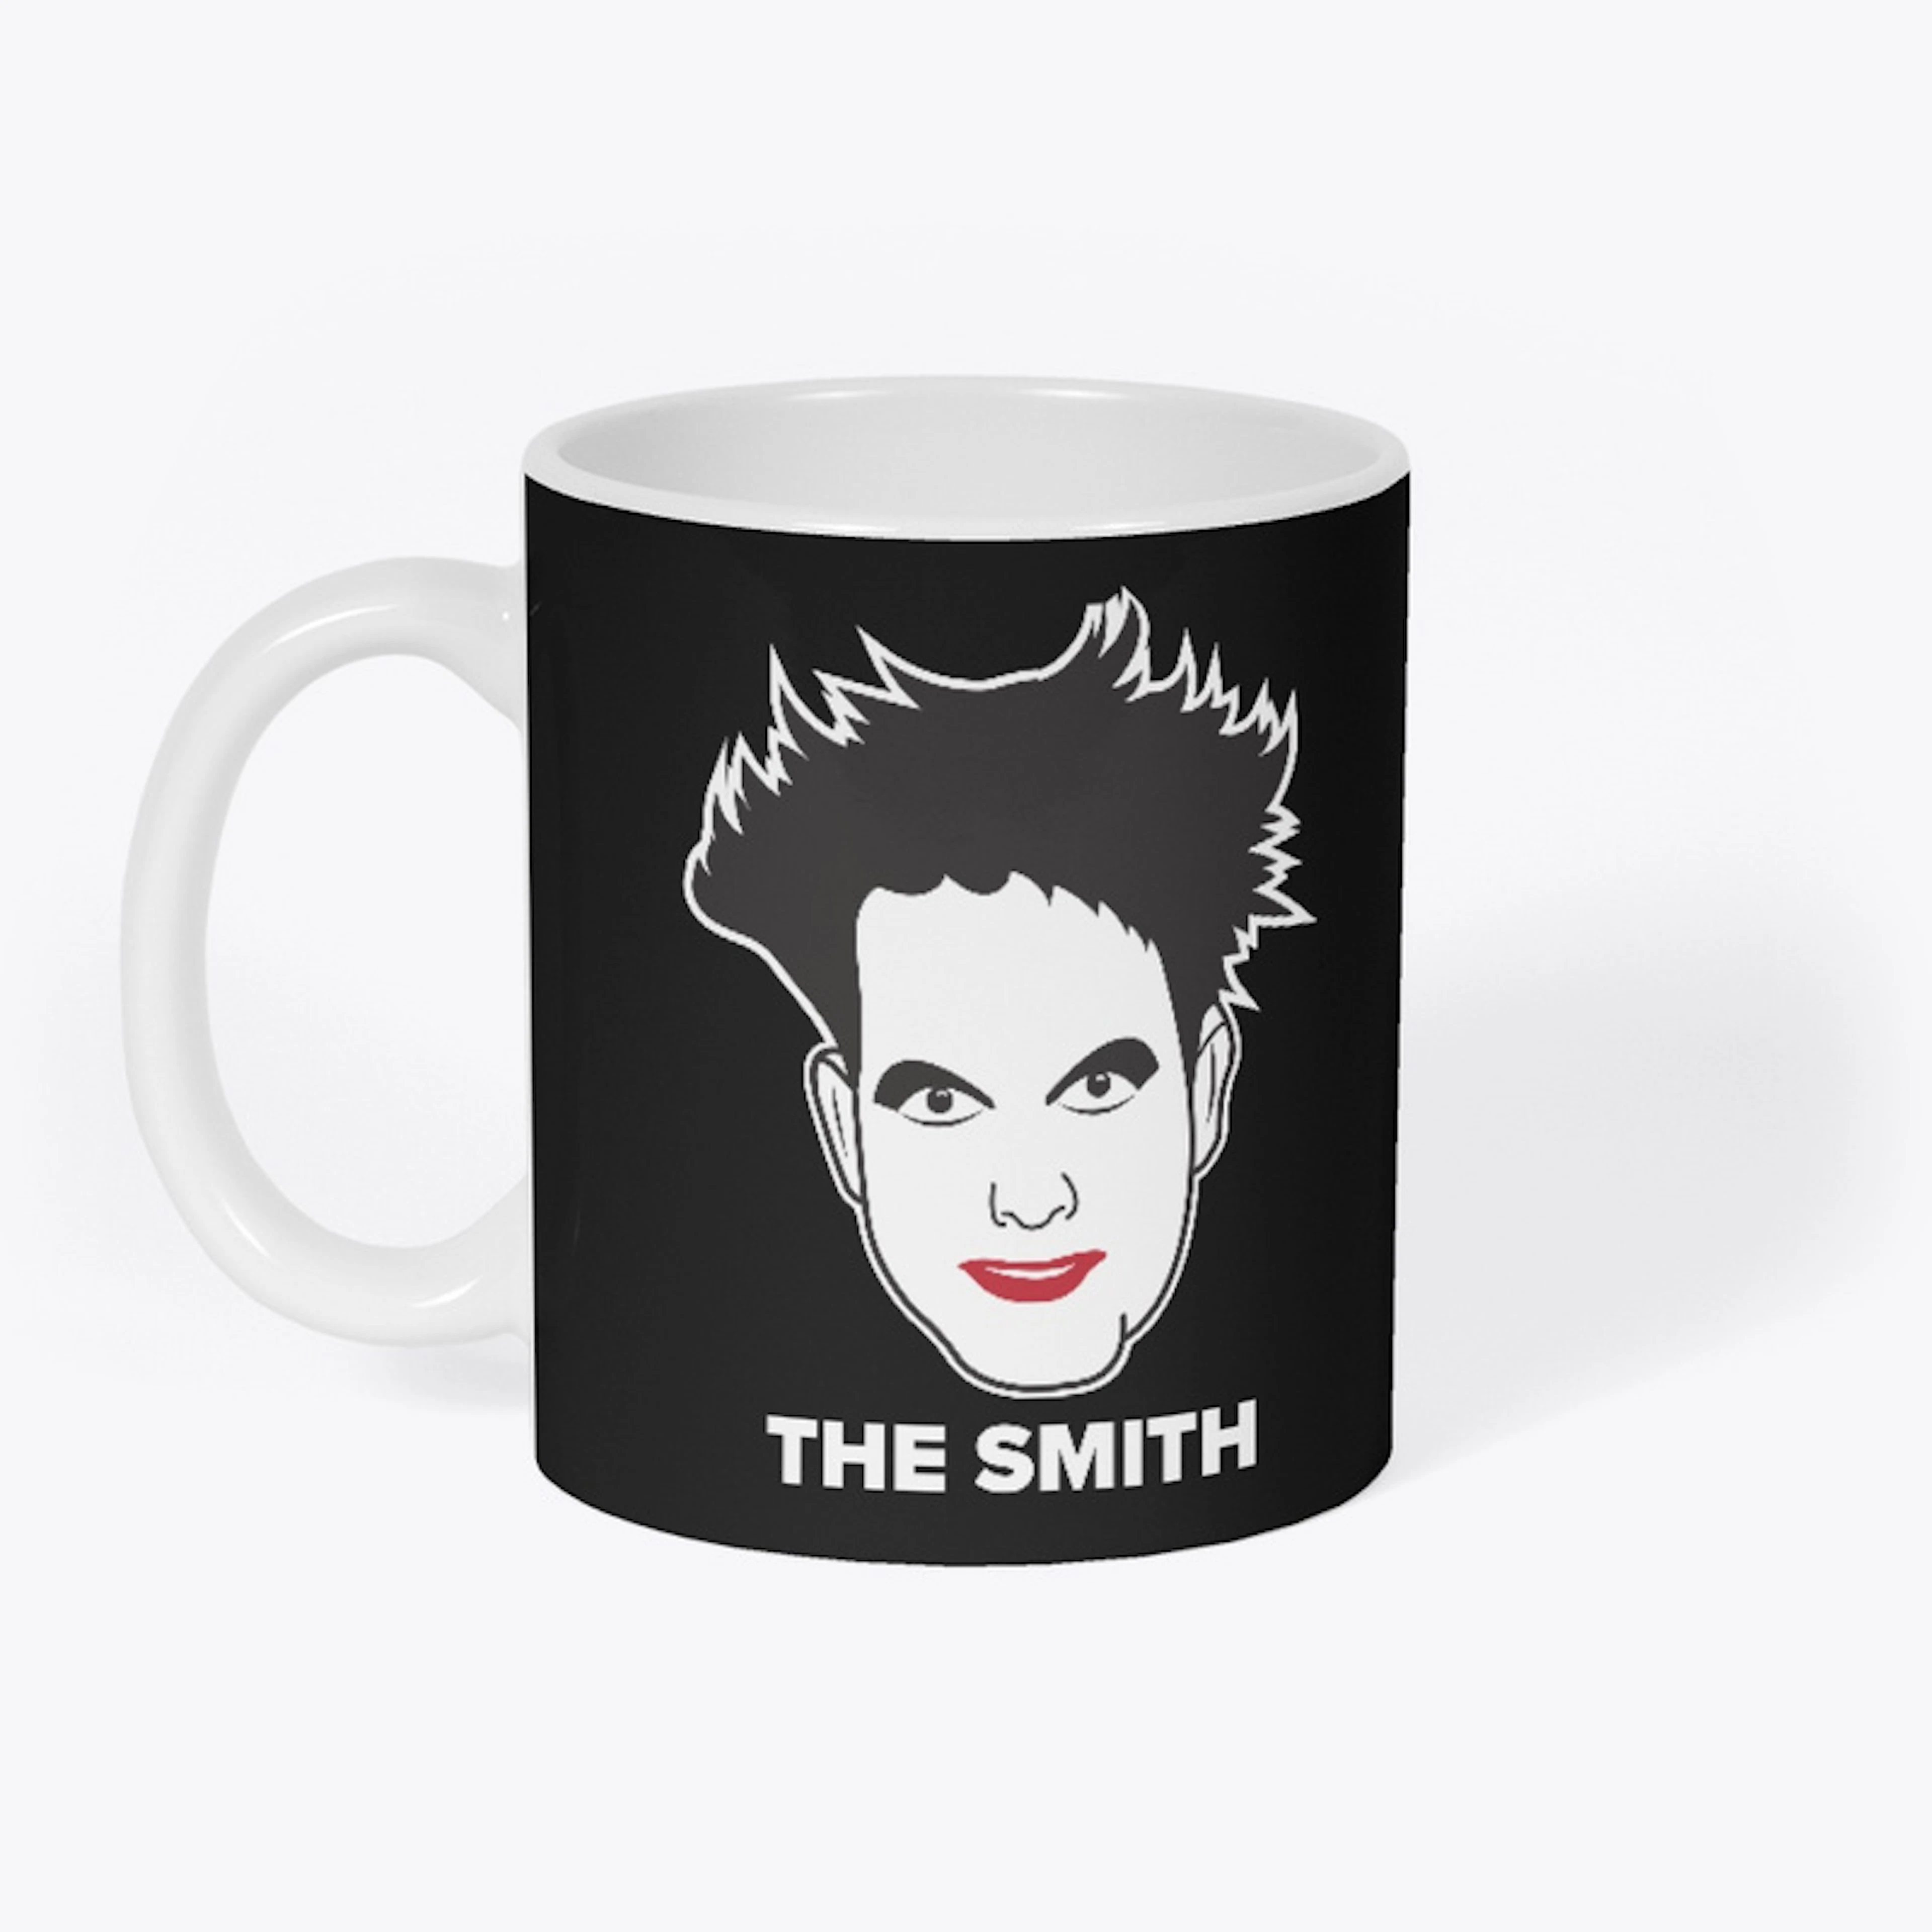 "The" Smith